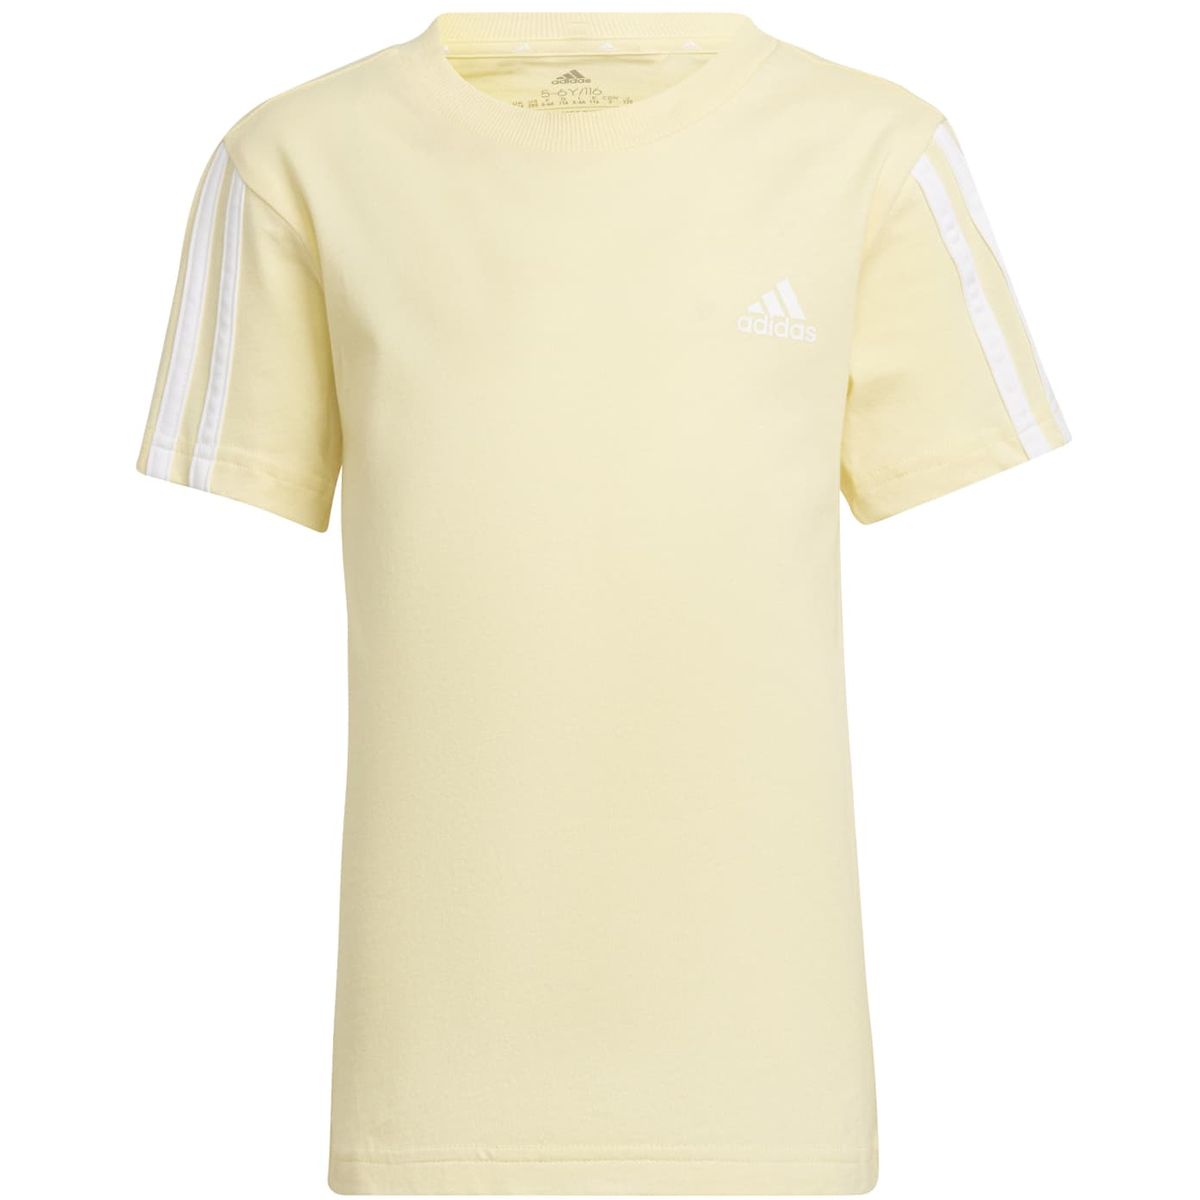 Adidas Essentials 3-Streifen T-Shirt Kinder